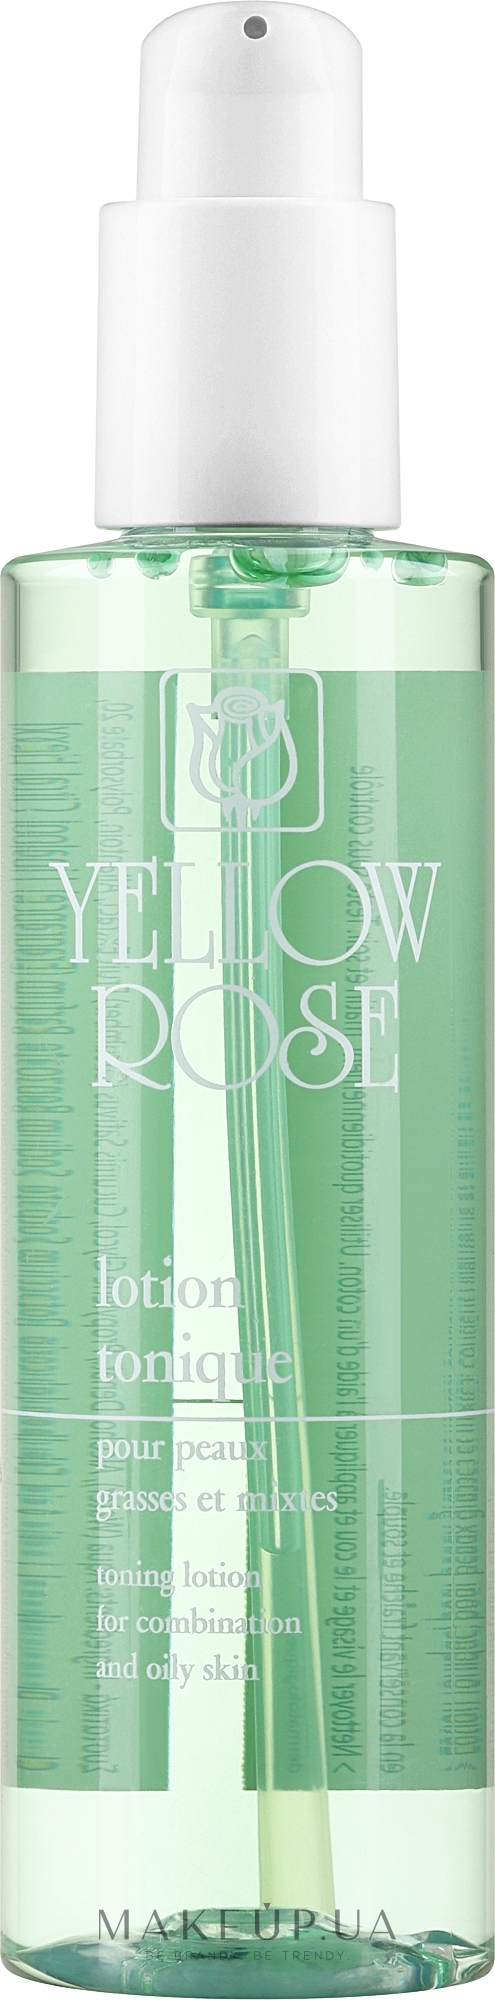 Противовоспалительный тонизирующий лосьон - Yellow Rose Lotion Tonique — фото 200ml